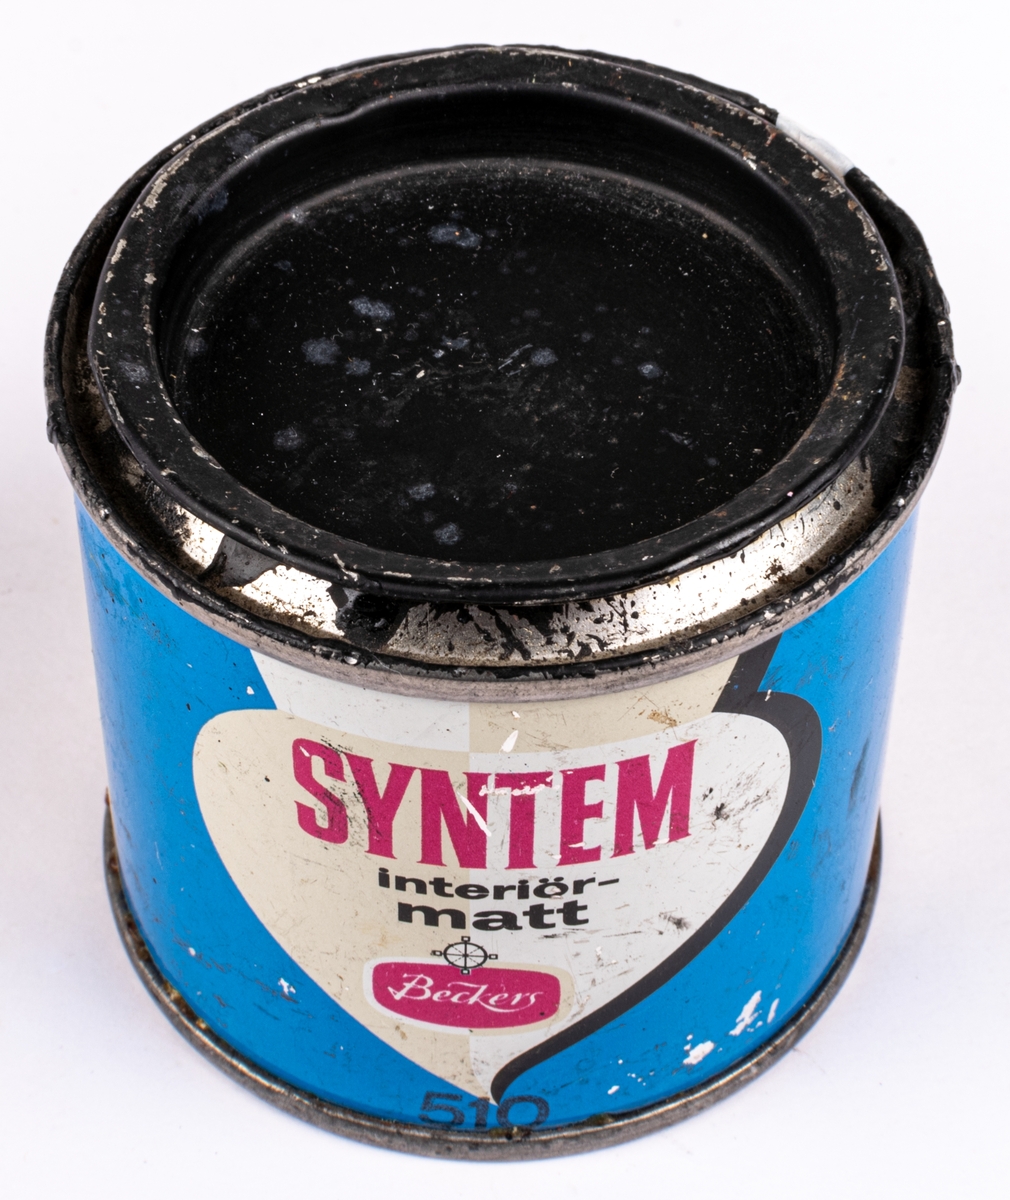 En plåtburk med målarfärg från Beckers. System interiörmatt, svart kulör.